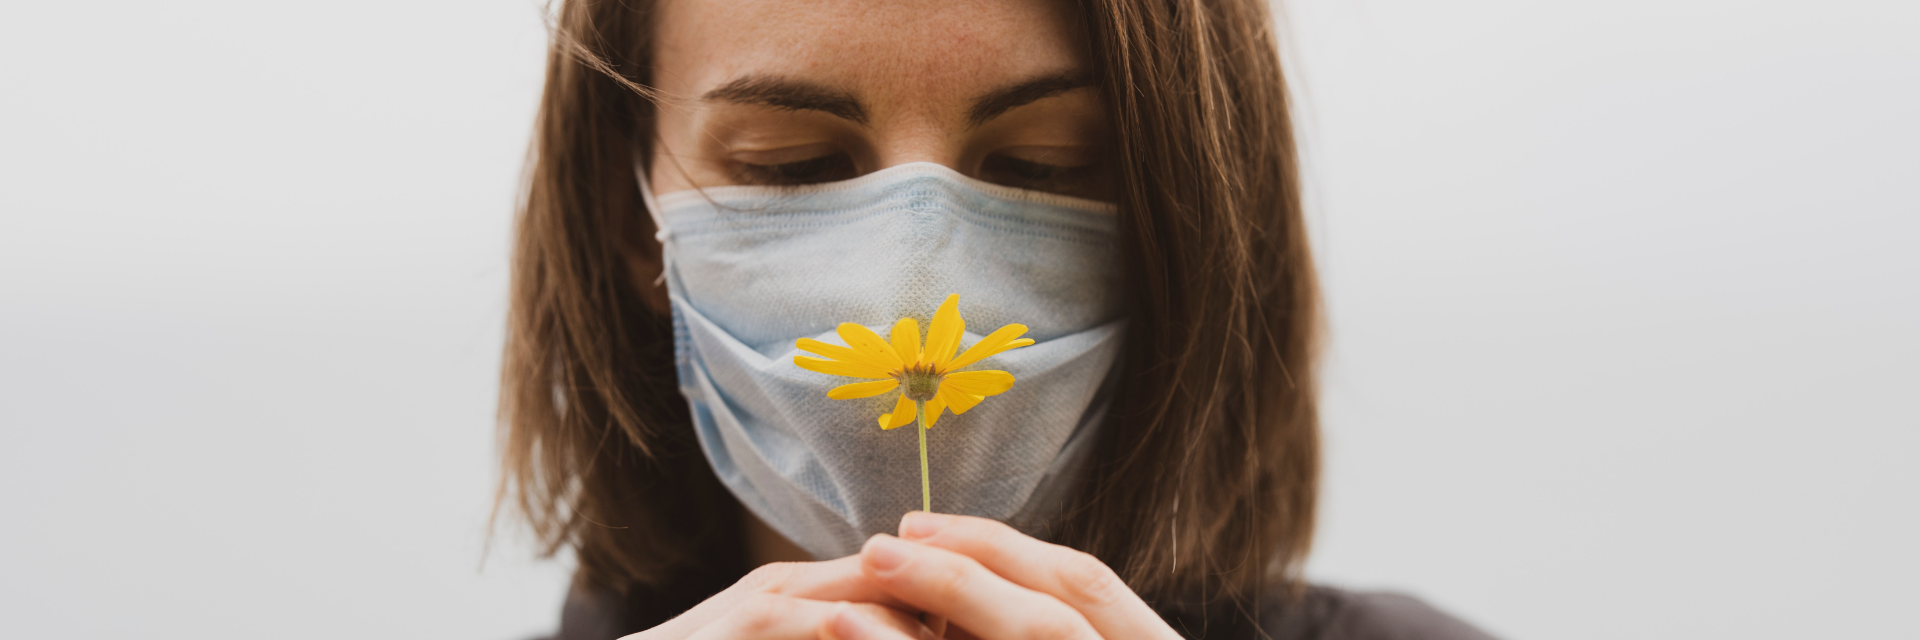  Alergias primaverales ¿Qué conexión tienen con la microbiota?  